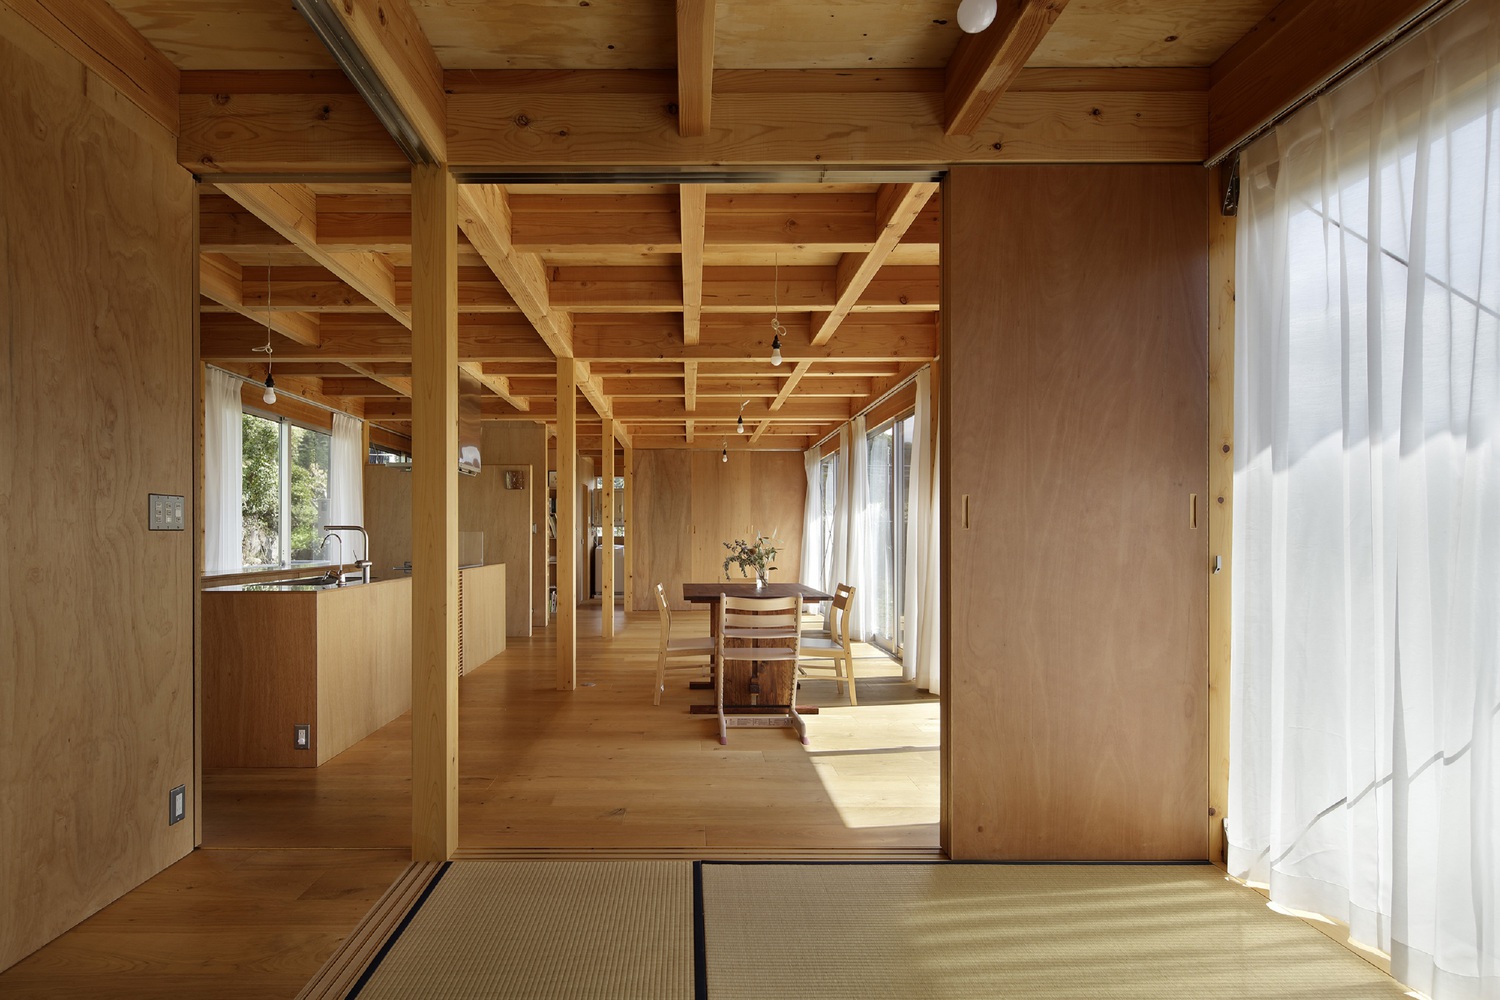 日本建筑室内风格诺图片